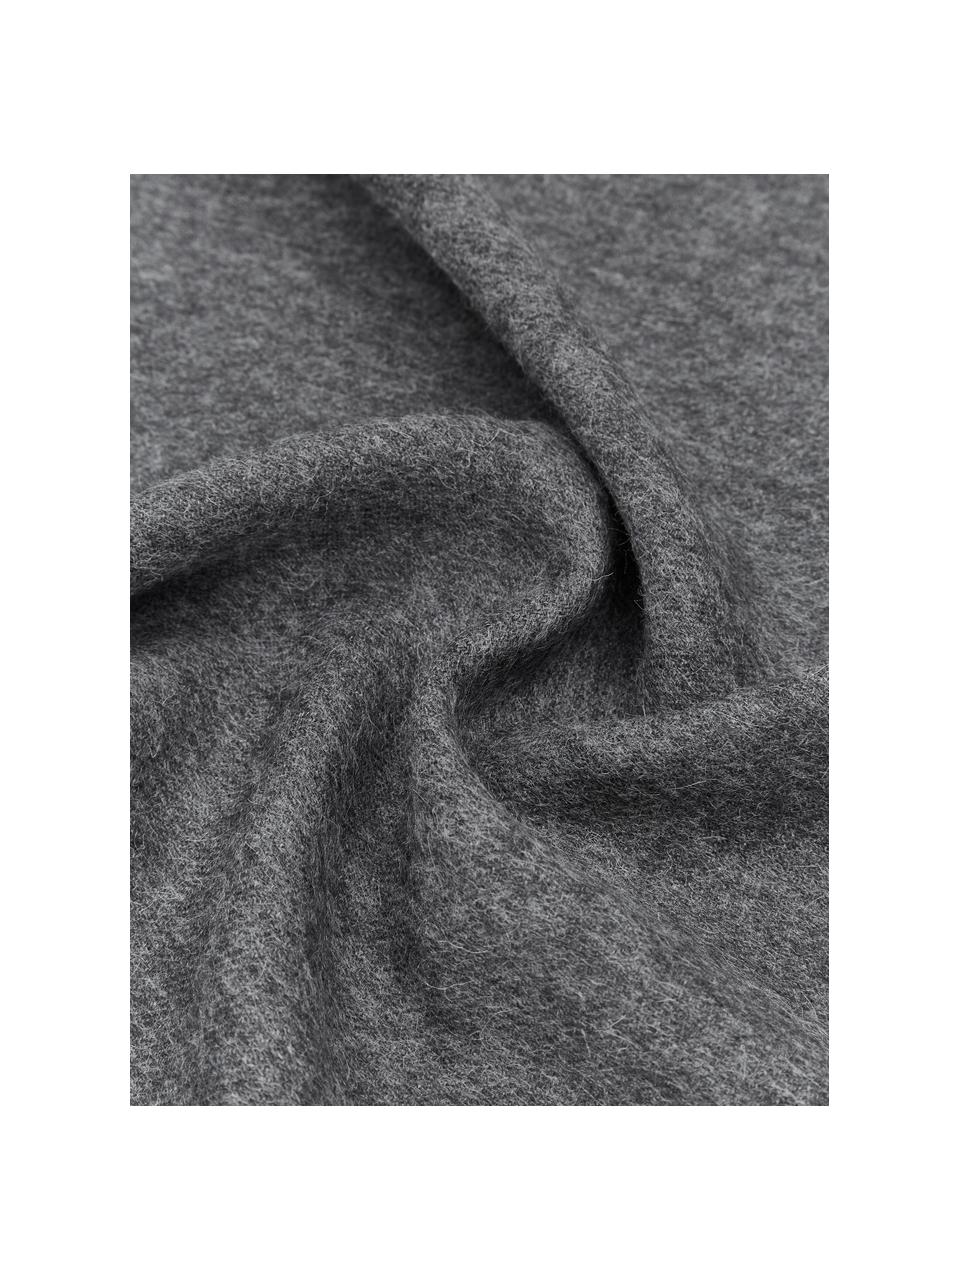 Plaid Luxury aus Babyalpaka-Wolle, 100 % Babyalpaka-Wolle

Diese Decke ist aus wunderbar weicher, hochwertiger Babyalpaka-Wolle gewebt. Sie schmeichelt der Haut und spendet wohlige Wärme, ist strapazierfähig aber dennoch leicht und besitzt hervorragende temperaturregulierende Eigenschaften. Dadurch ist diese Decke der perfekte Begleiter für kühle Sommerabende ebenso wie kalte Wintertage., Dunkelgrau, B 130 x L 200 cm